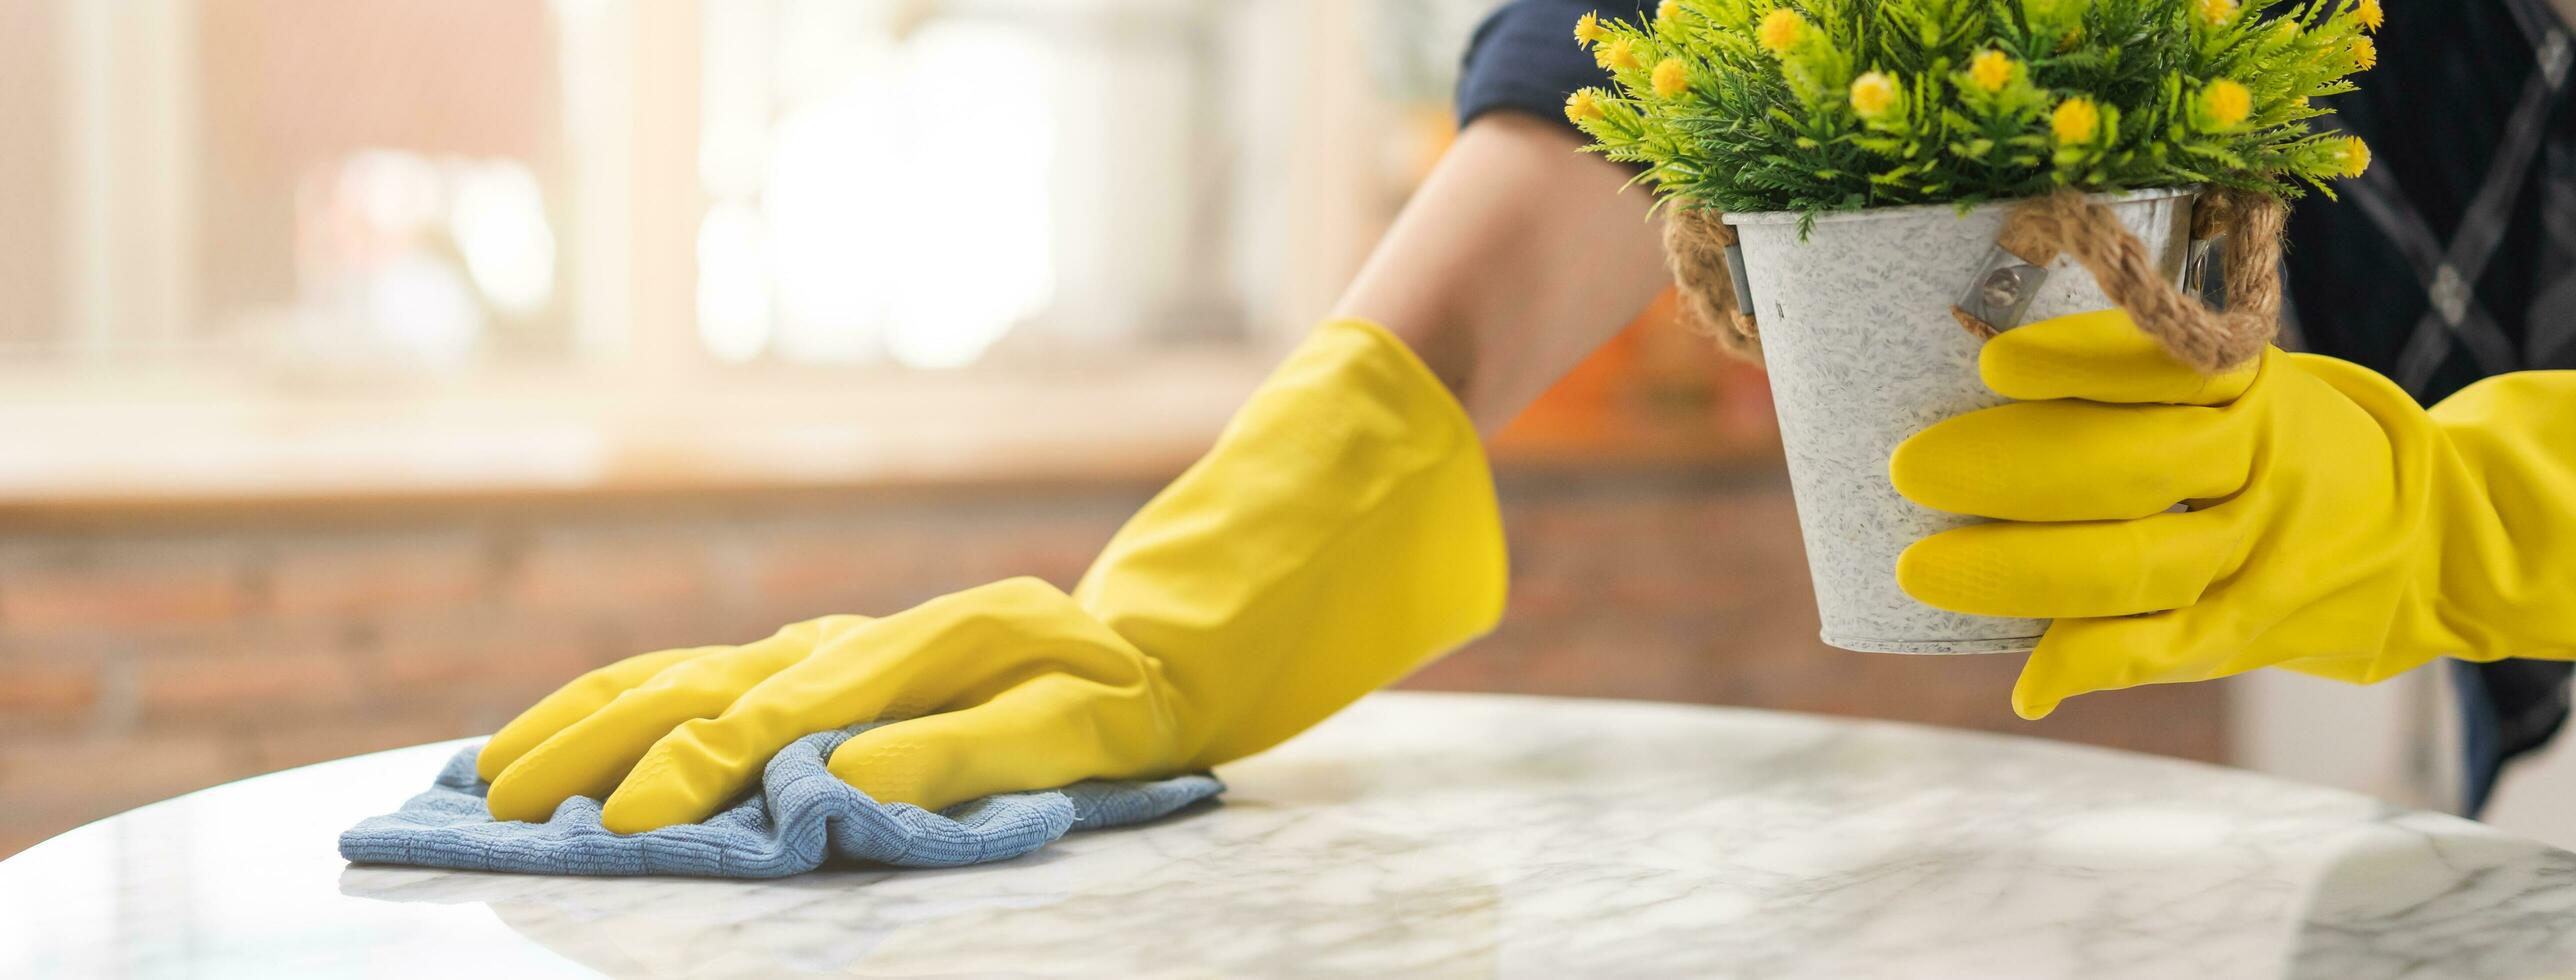 schoonmaak hygiëne, hand- van hulp in de huishouding, serveerster vrouw vervelend geel beschermend handschoenen terwijl schoonmaak , nemen uit bloempot van tafel en gebruik makend van blauw vod afvegen naar stof. huishouding schoon omhoog, schoner. foto